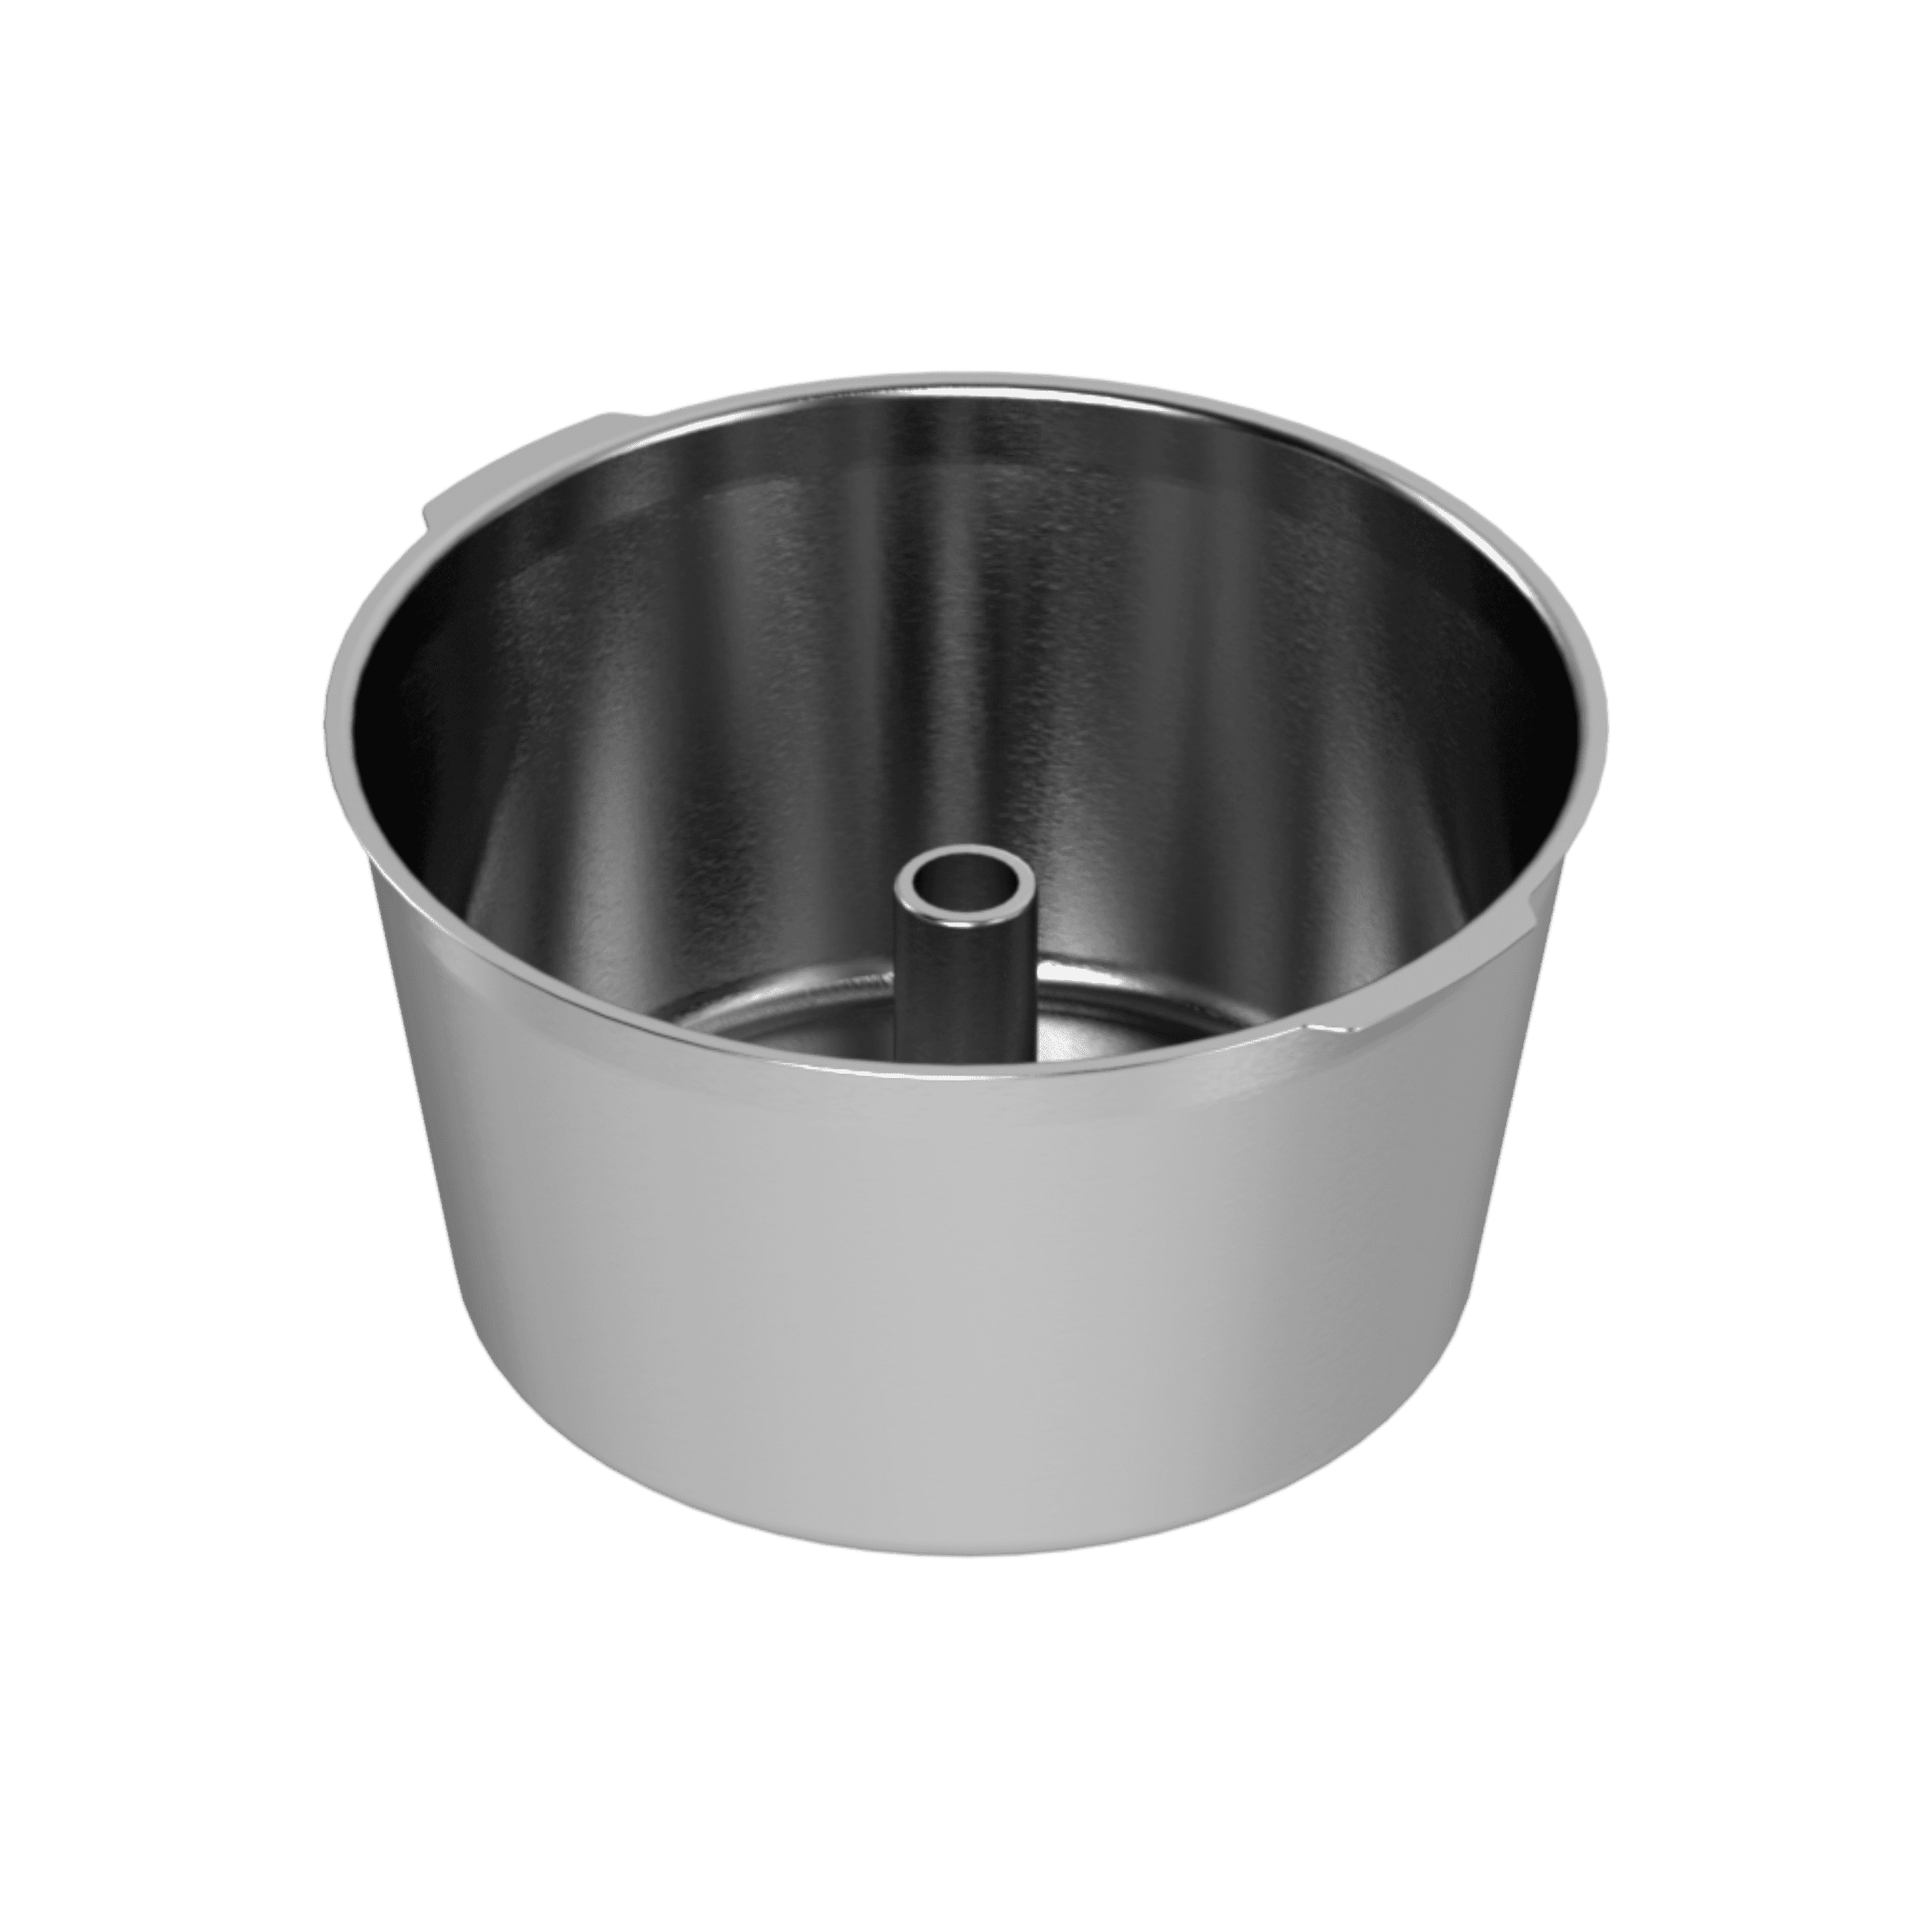 Oliver Inner pot, Stainless steel